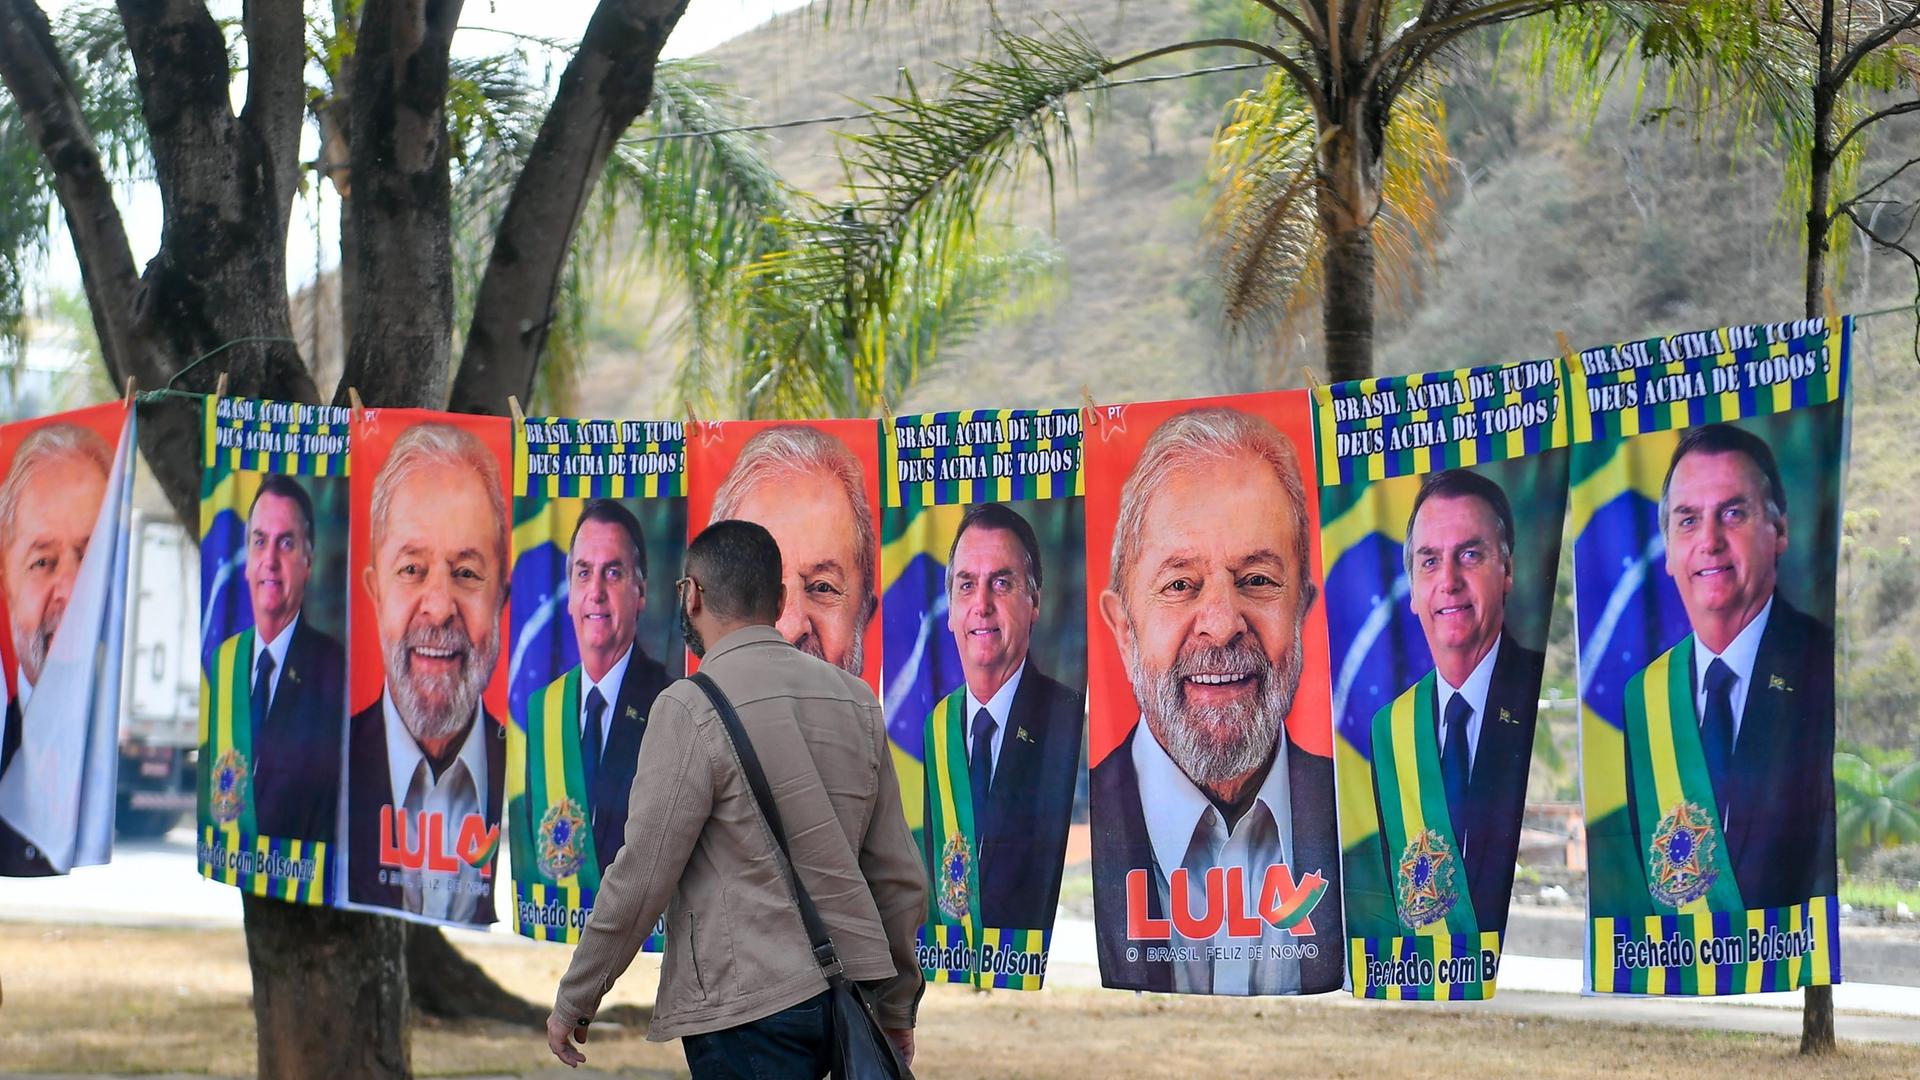 Porträts der beiden aussichtsreichsten Kandidaten für die Präsidentschaftswahl 2022, Amtsinhaber Jair Bolsonaro und Herausforderer und Ex-Präsident Lula, sind entlang einer Straße aufgehängt. 